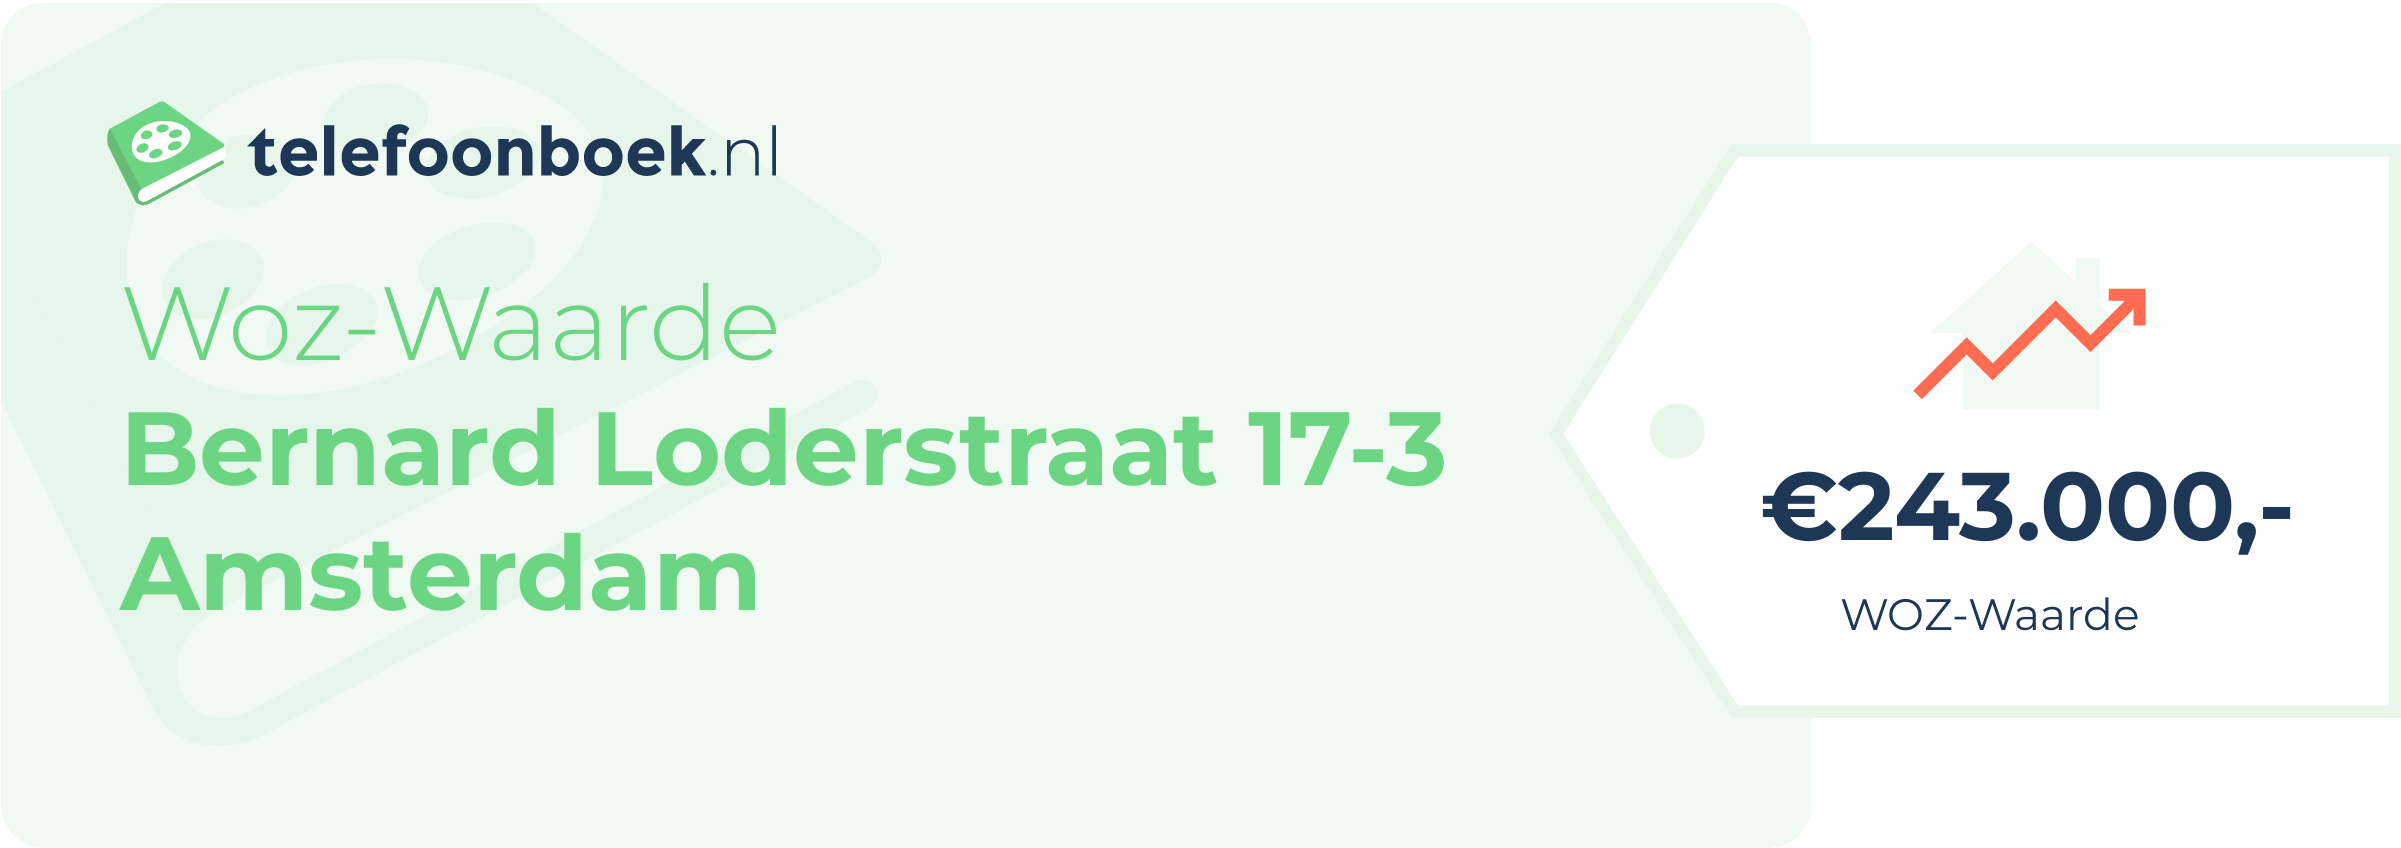 WOZ-waarde Bernard Loderstraat 17-3 Amsterdam